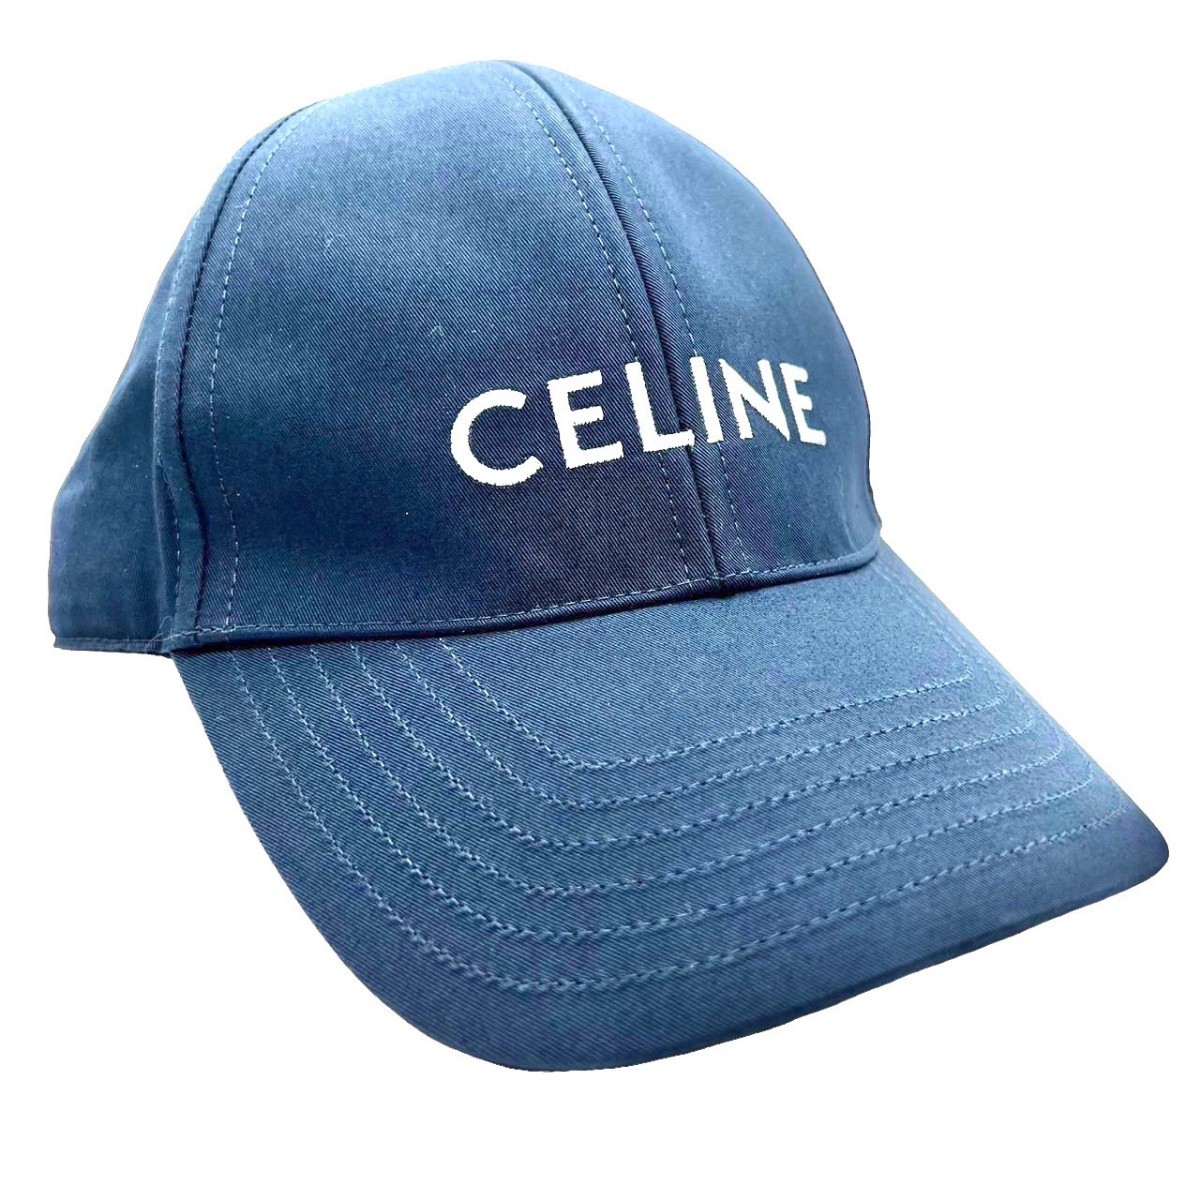 CELINE セリーヌ 刺繍ロゴ ベースボールキャップ 2AUS924N.38NO サイズL 帽子 ユニセックス ネイビー 10-21-43 N 同梱不可